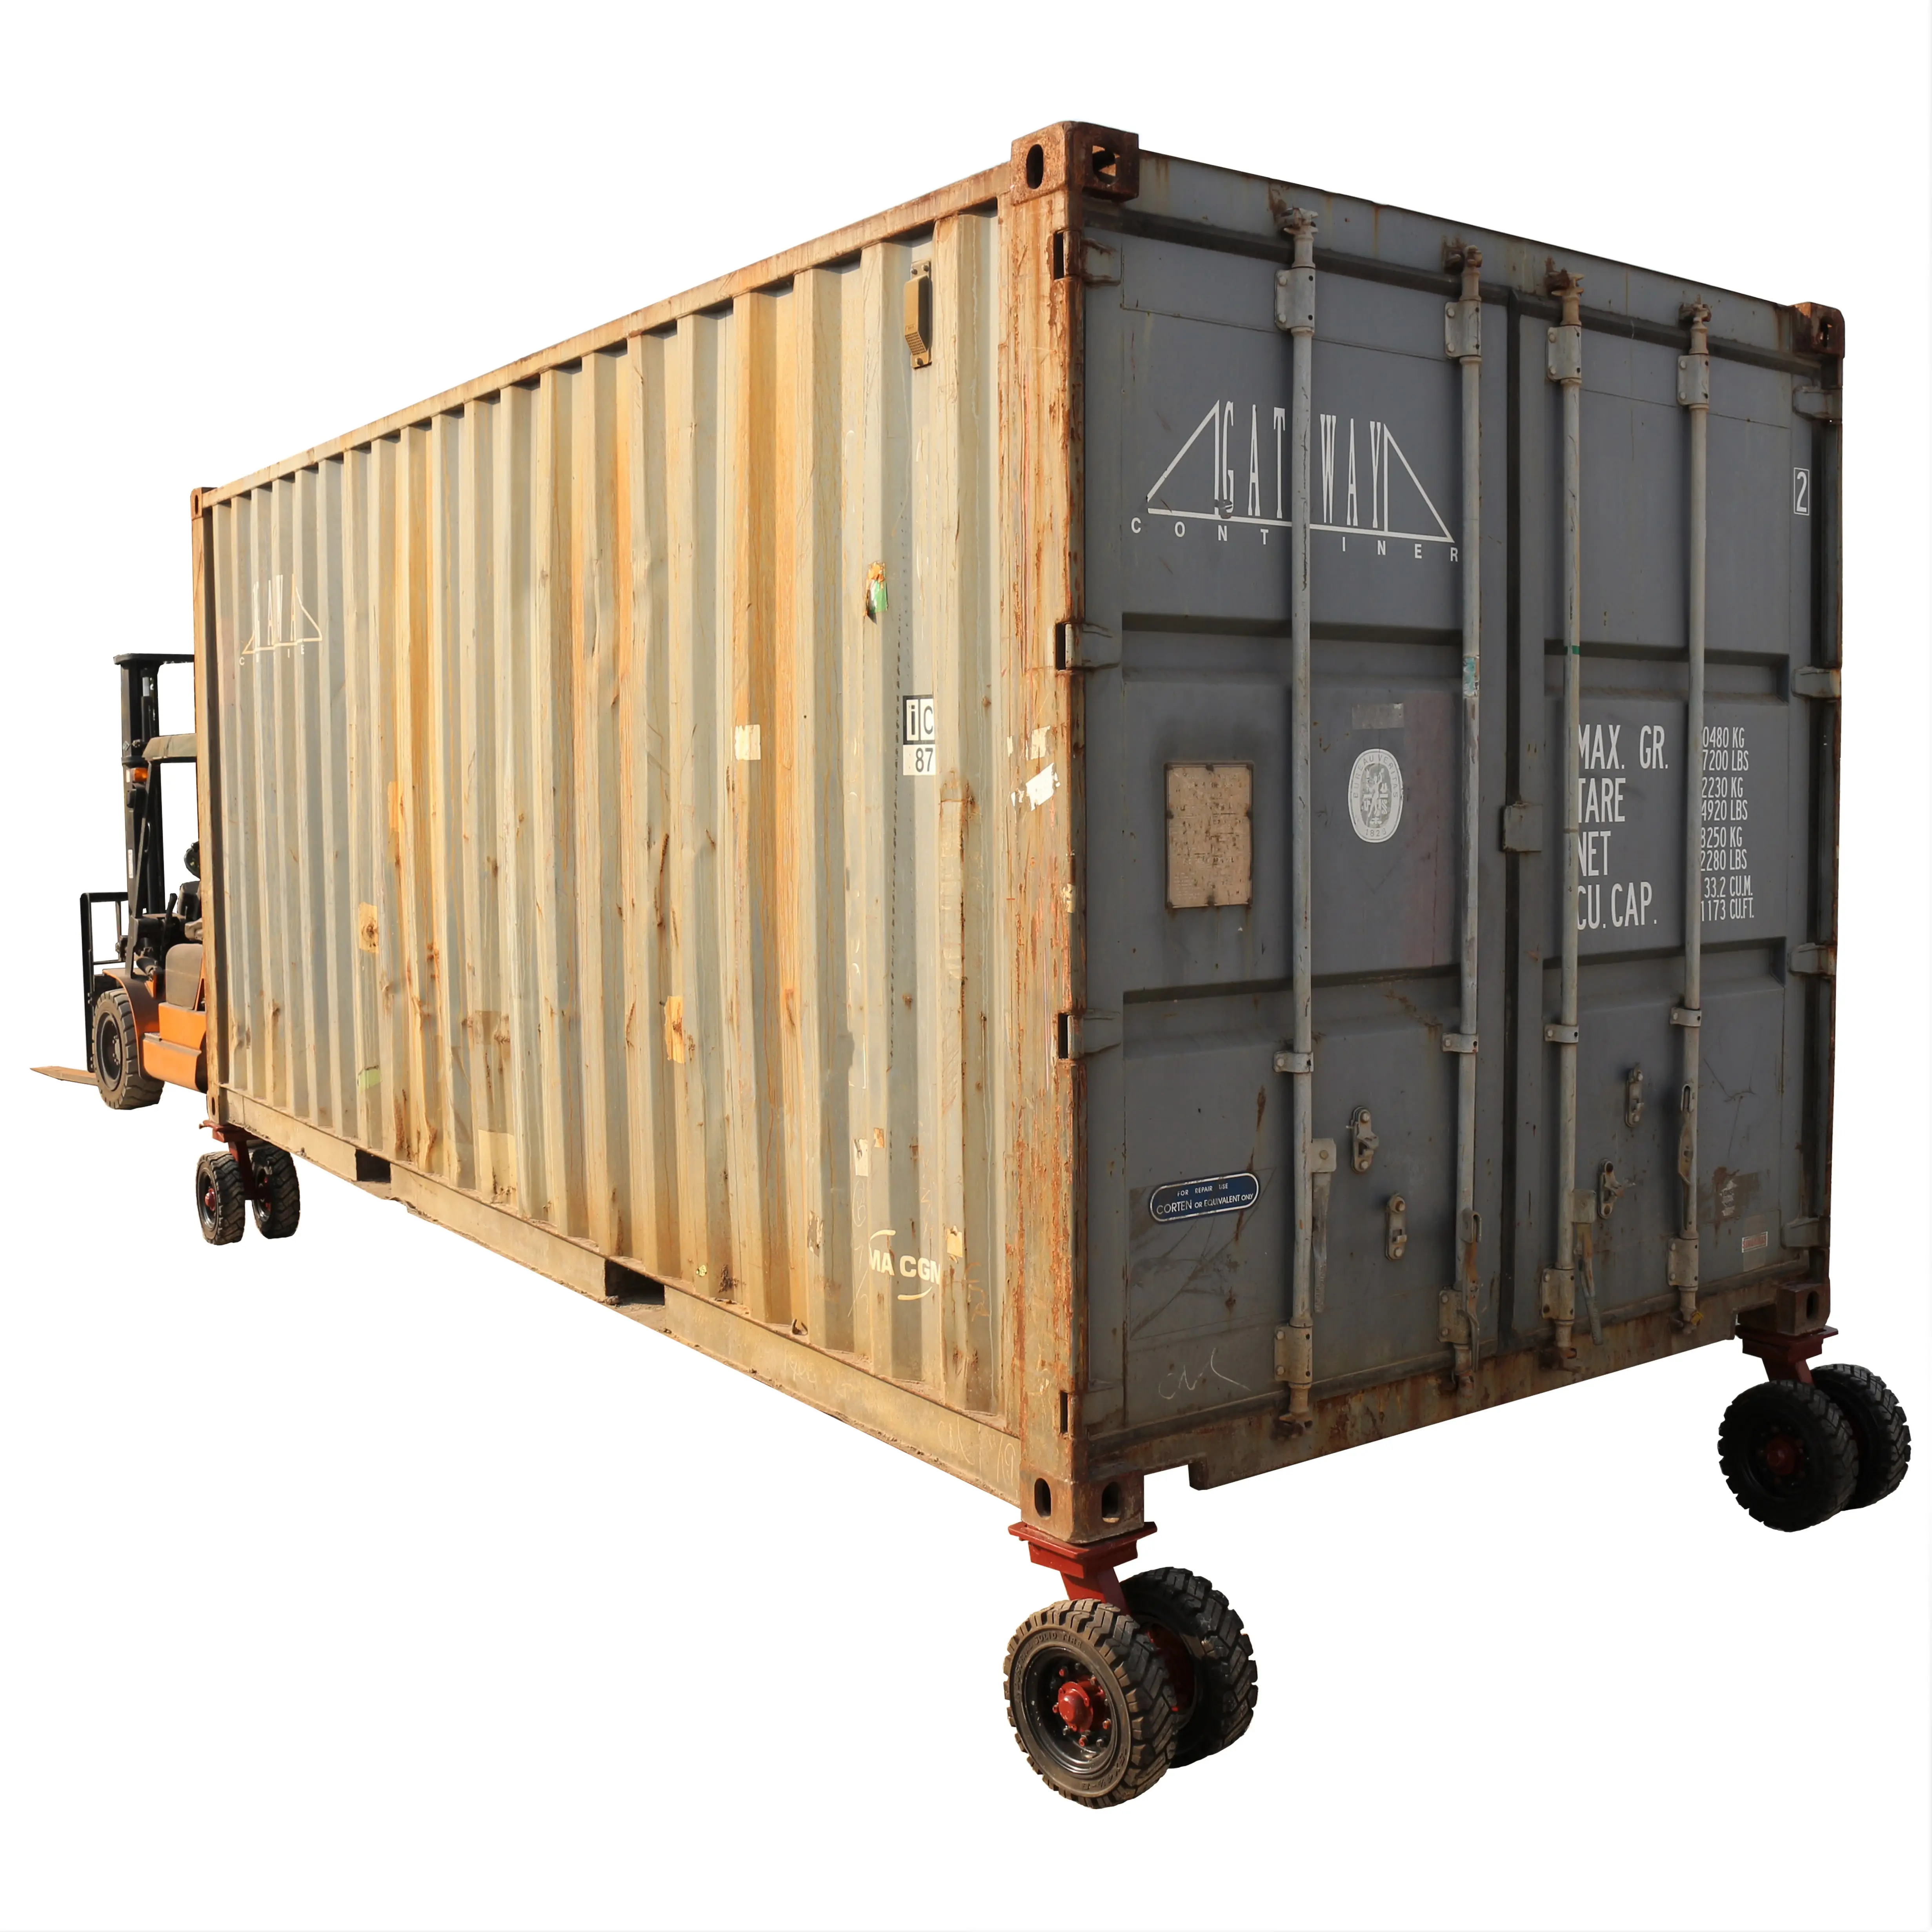 S-S ISO kargo konteyneri Castor tekerlekler kaba düzensiz zemin